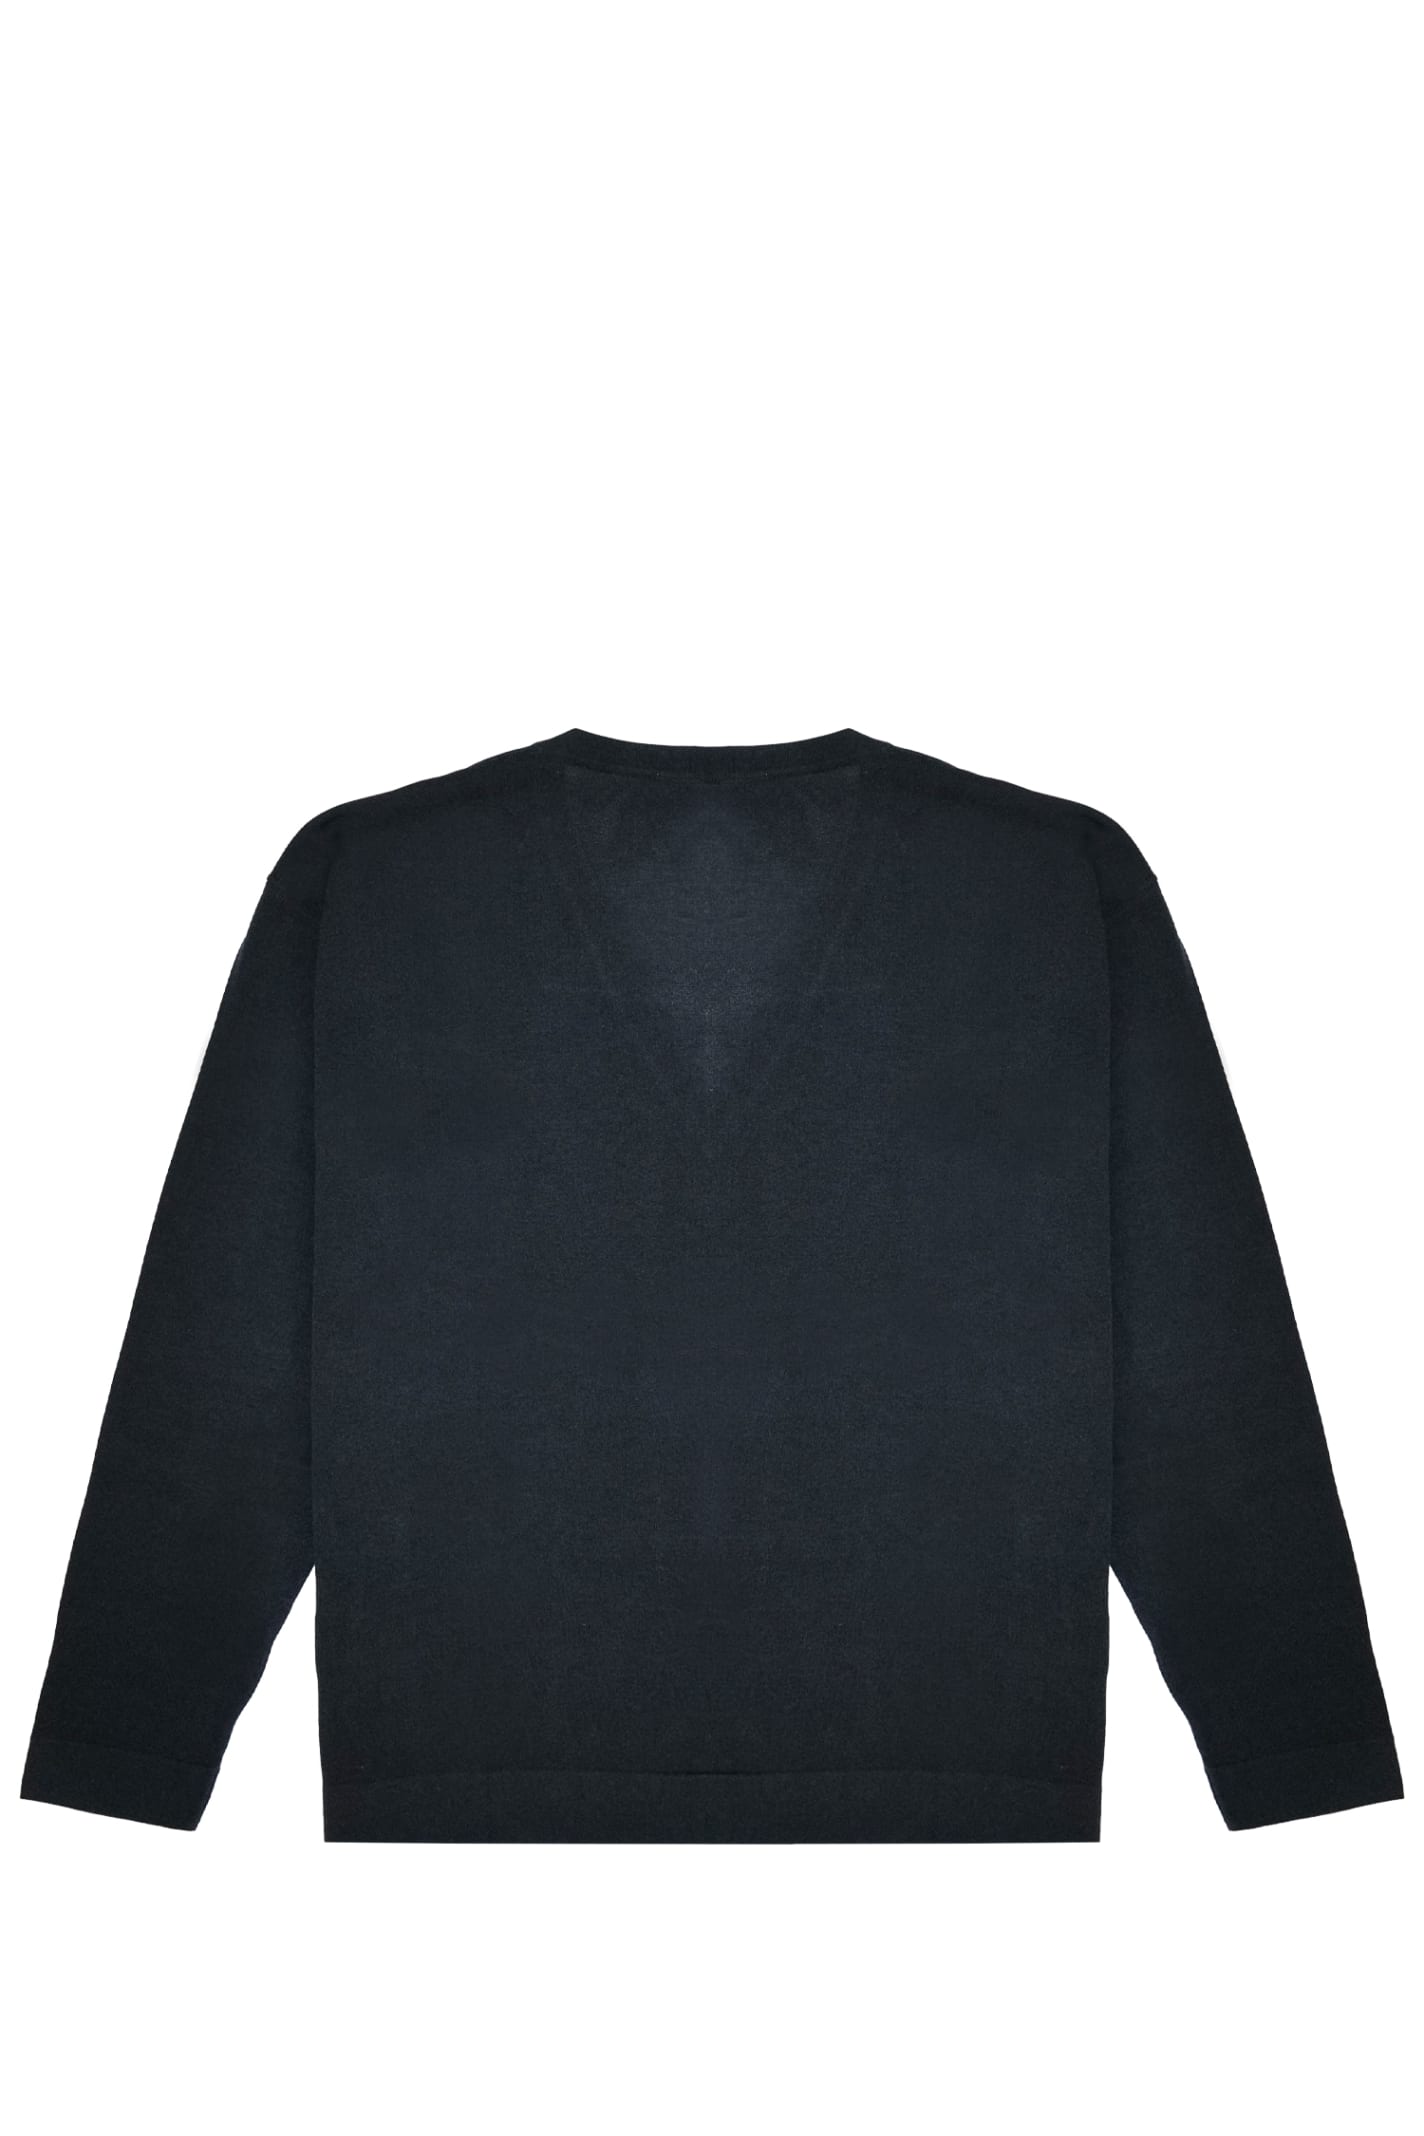 Shop Drumohr Sweater In Black